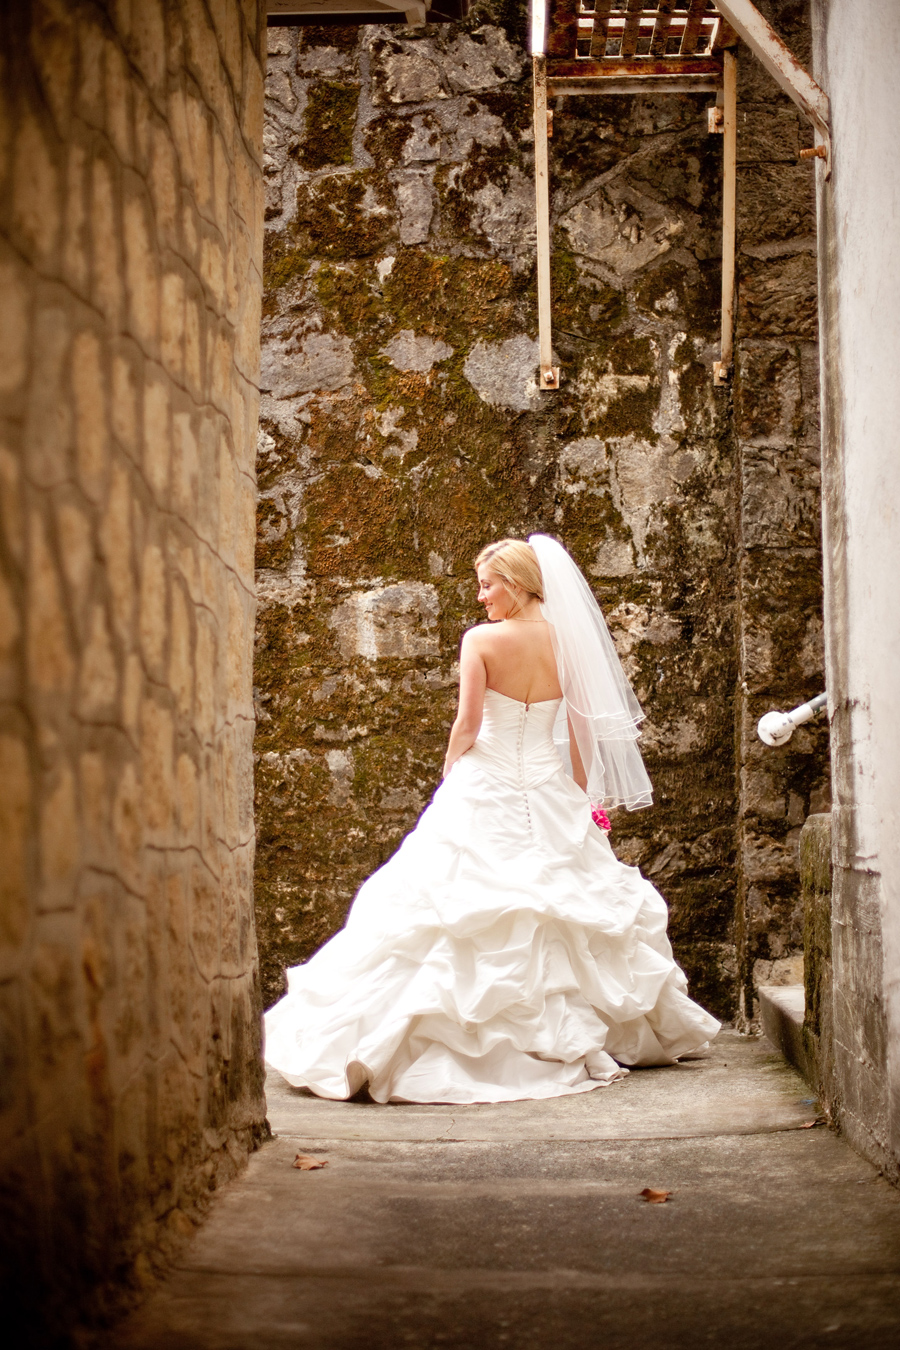 Bride dances in walkway at Los Gatos wedding venue.